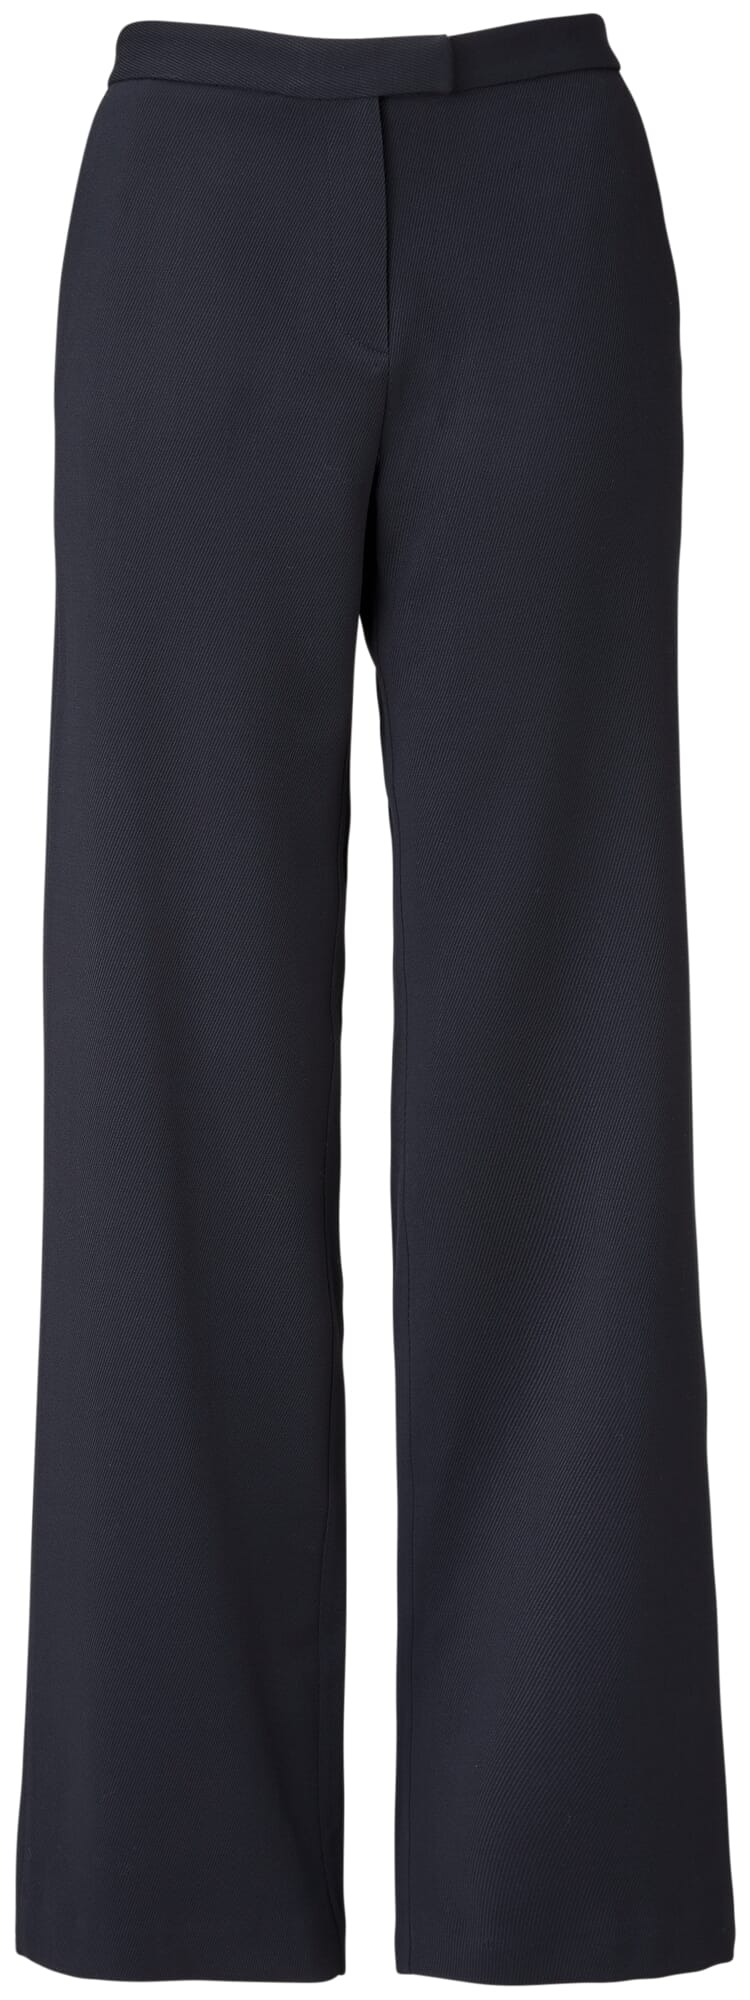 Strenesse Wollen broek donkerblauw zakelijke stijl Mode Broeken Wollen broeken 